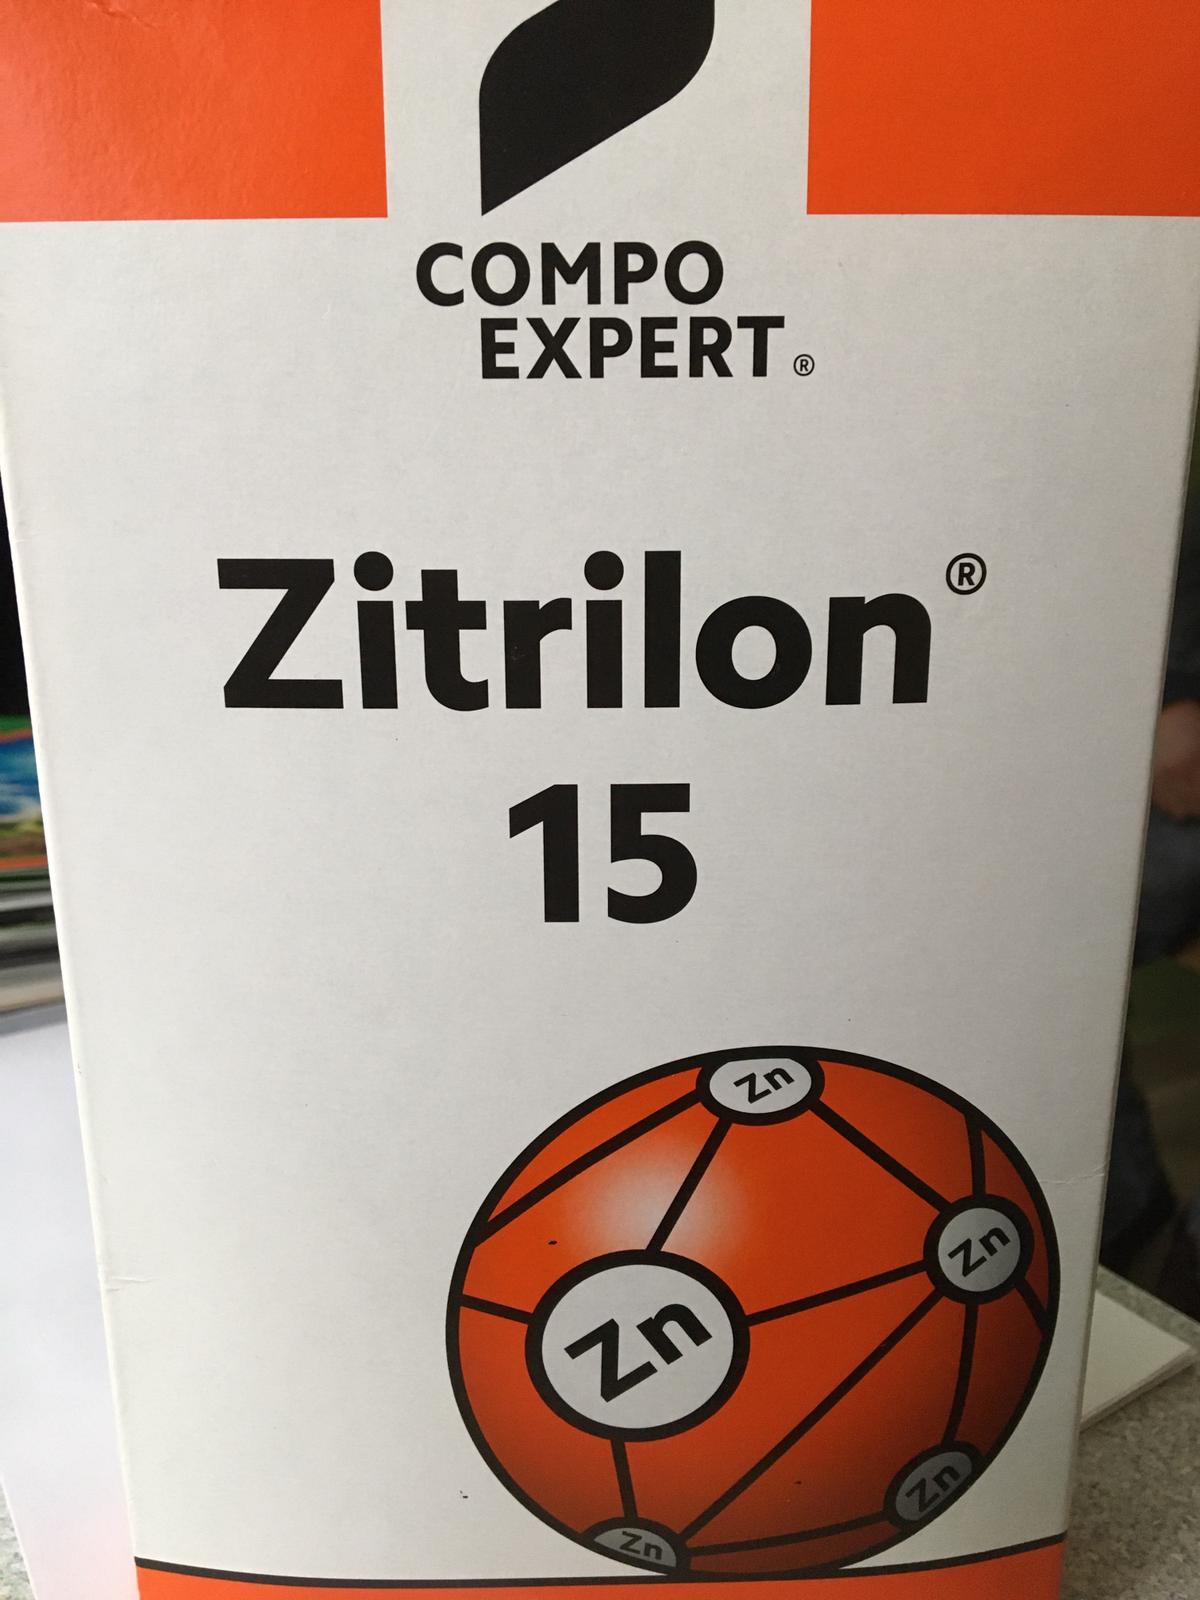 Compo Zitrilon %15 Çinko 1 Kğ